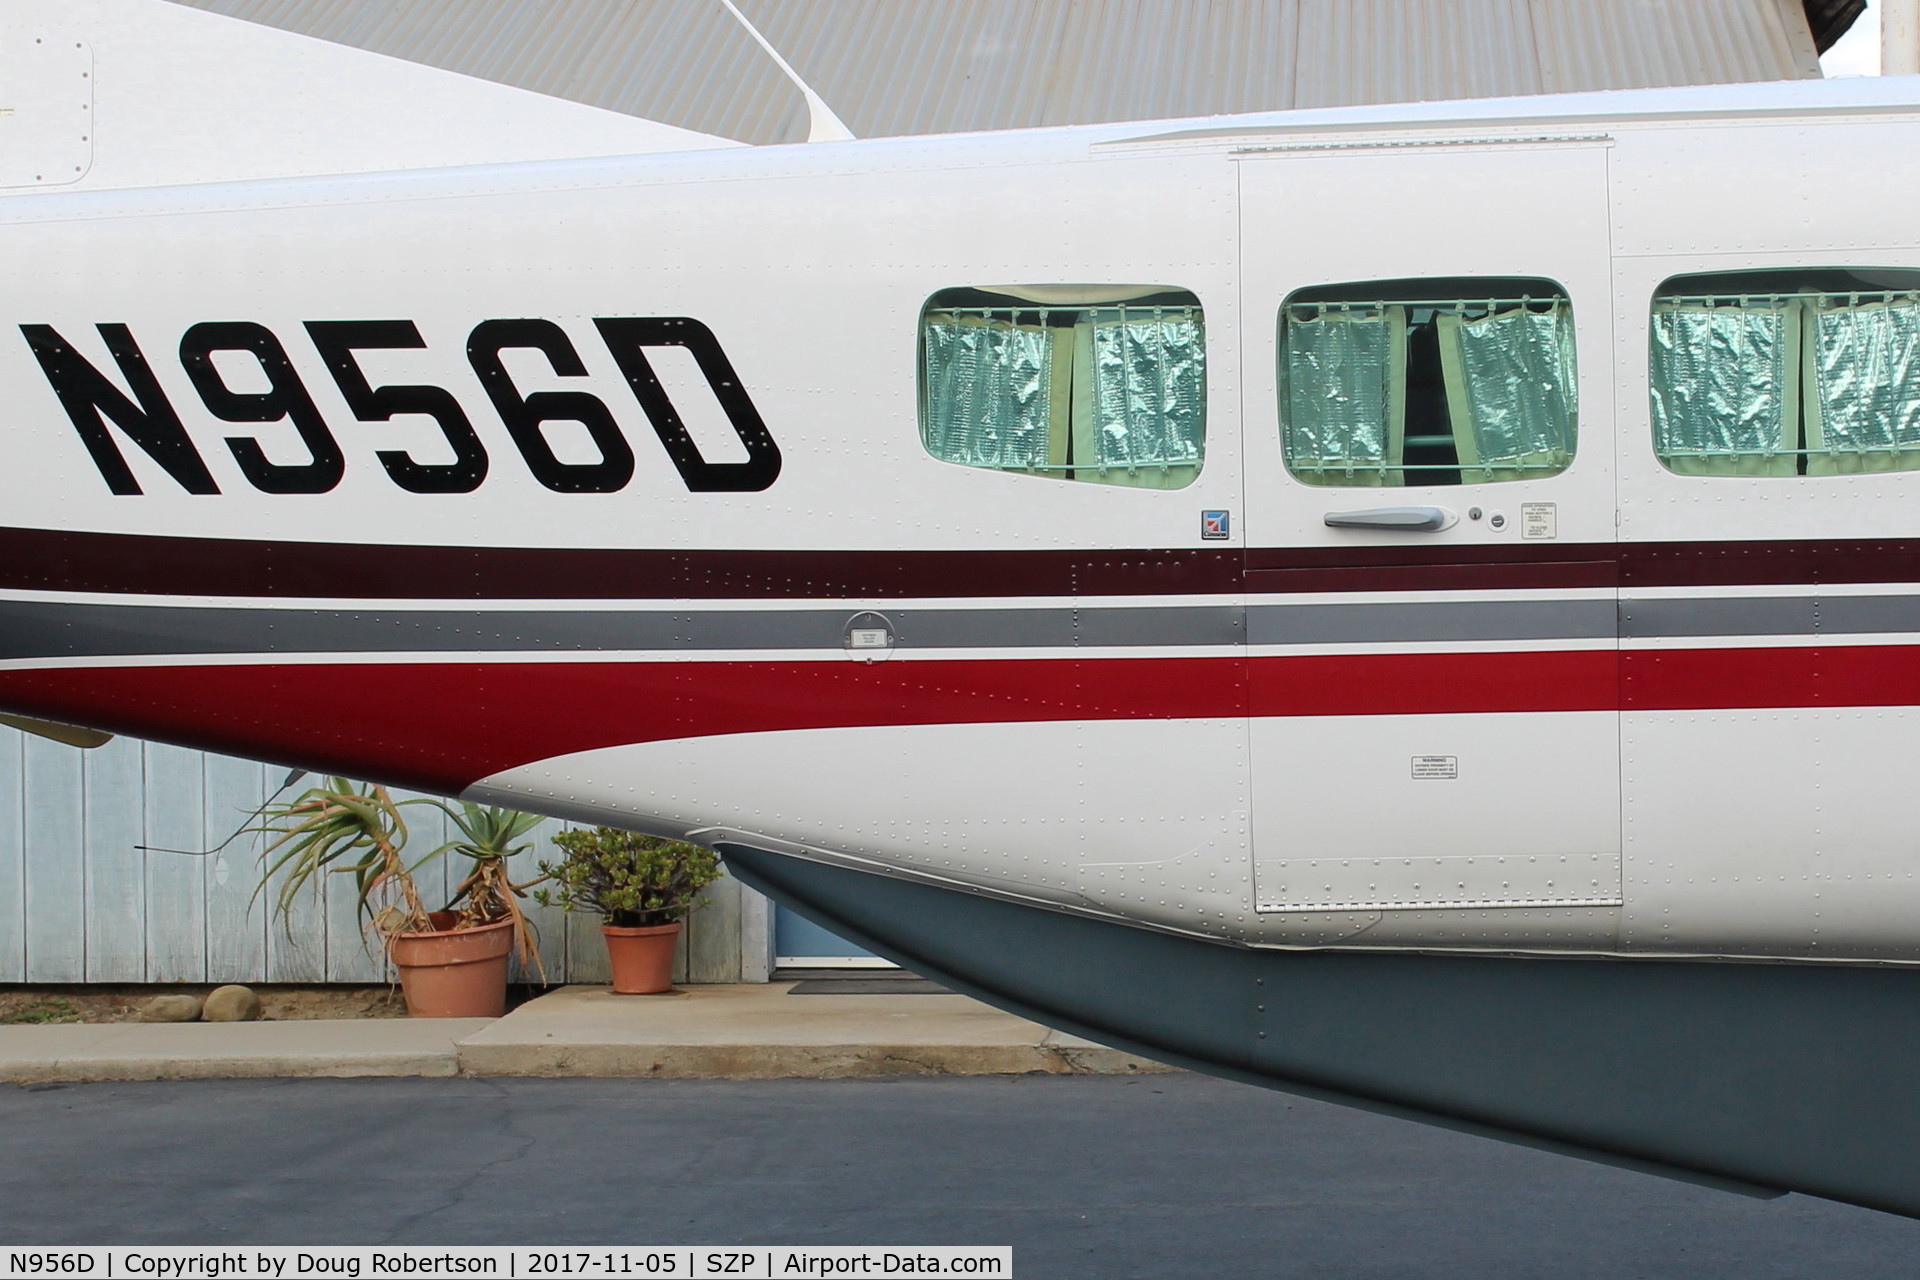 N956D, 2004 Cessna 208B C/N 208B1056, 2004 Cessna 208B TURBO CARAVAN, P&W(C)PT6A-114A Turboprop, 675 sHp, 12 seats, rear door